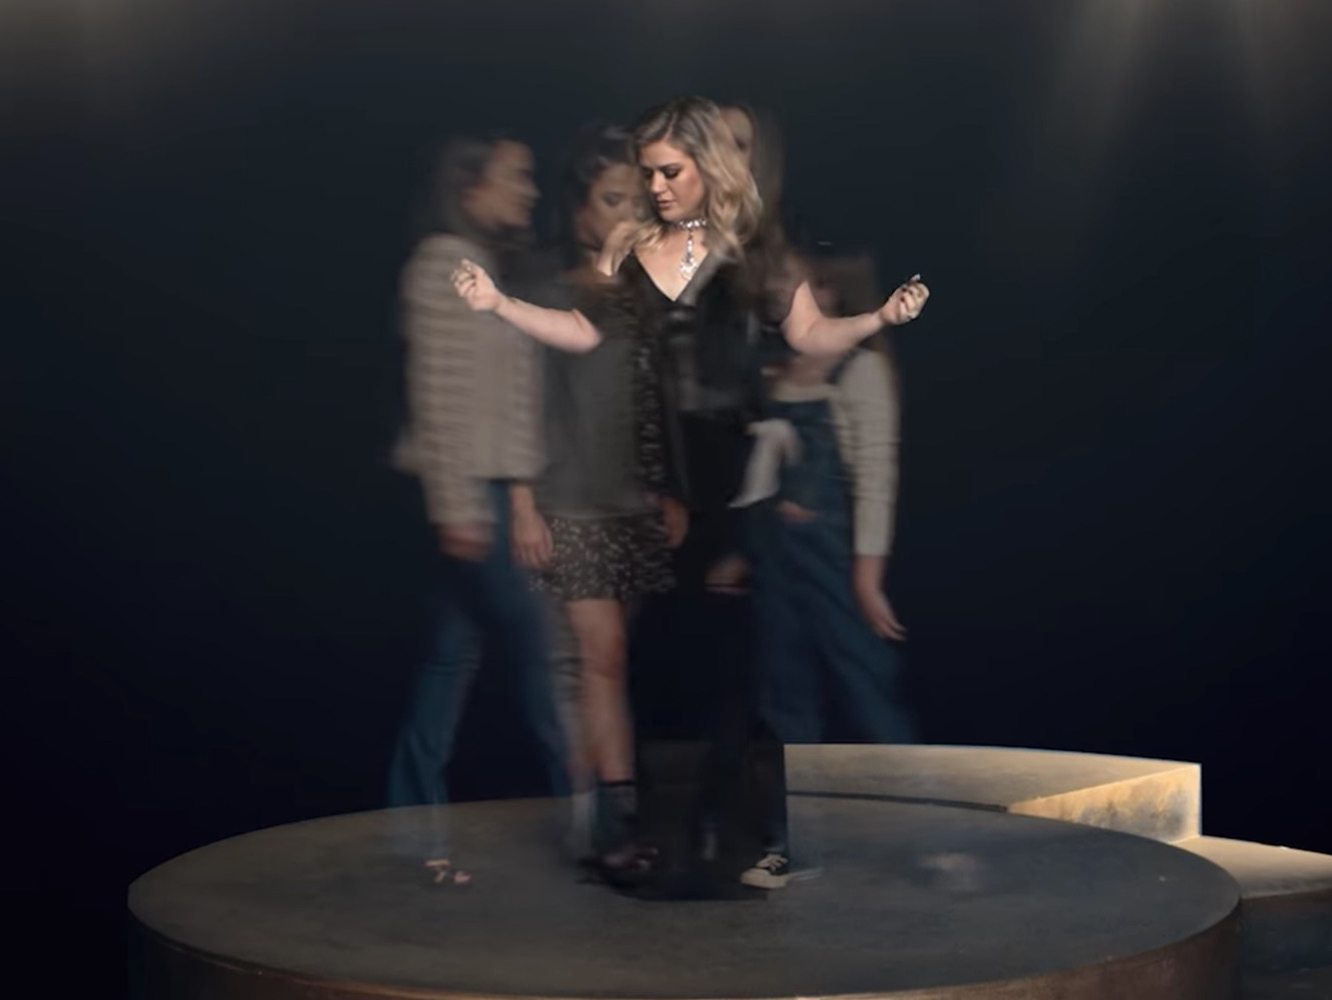  Kelly Clarkson busca un nuevo ‘Piece By Piece’ en su nuevo vídeo